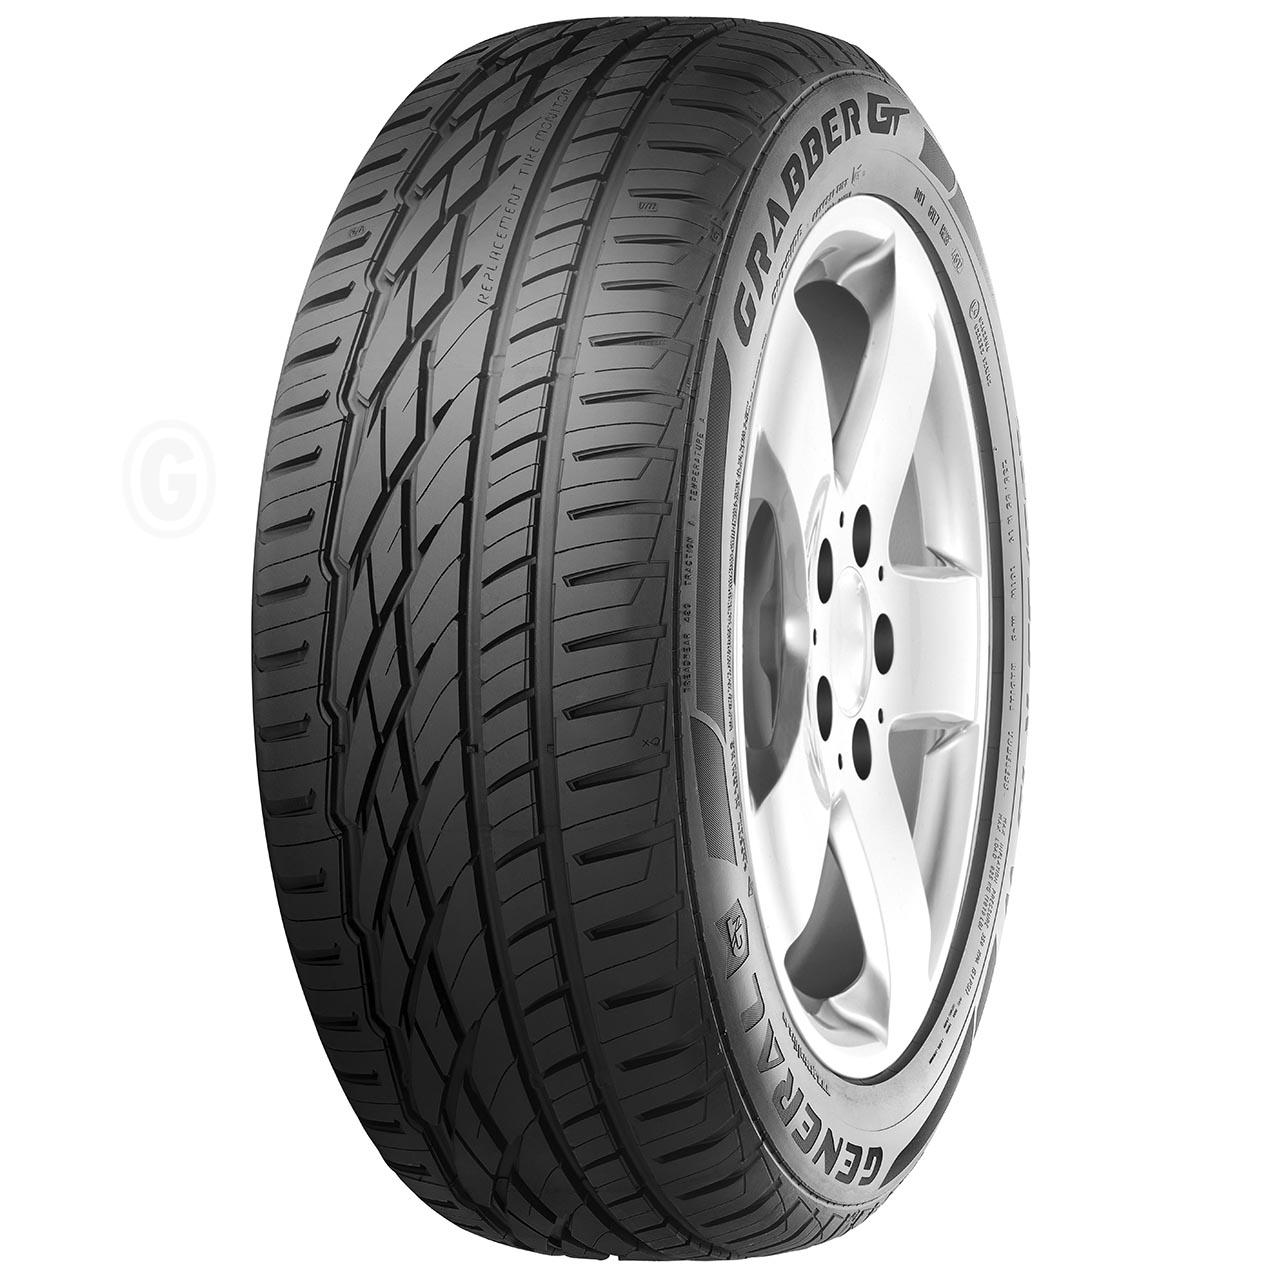 General Tire Grabber GT 255/60R17 106V FR